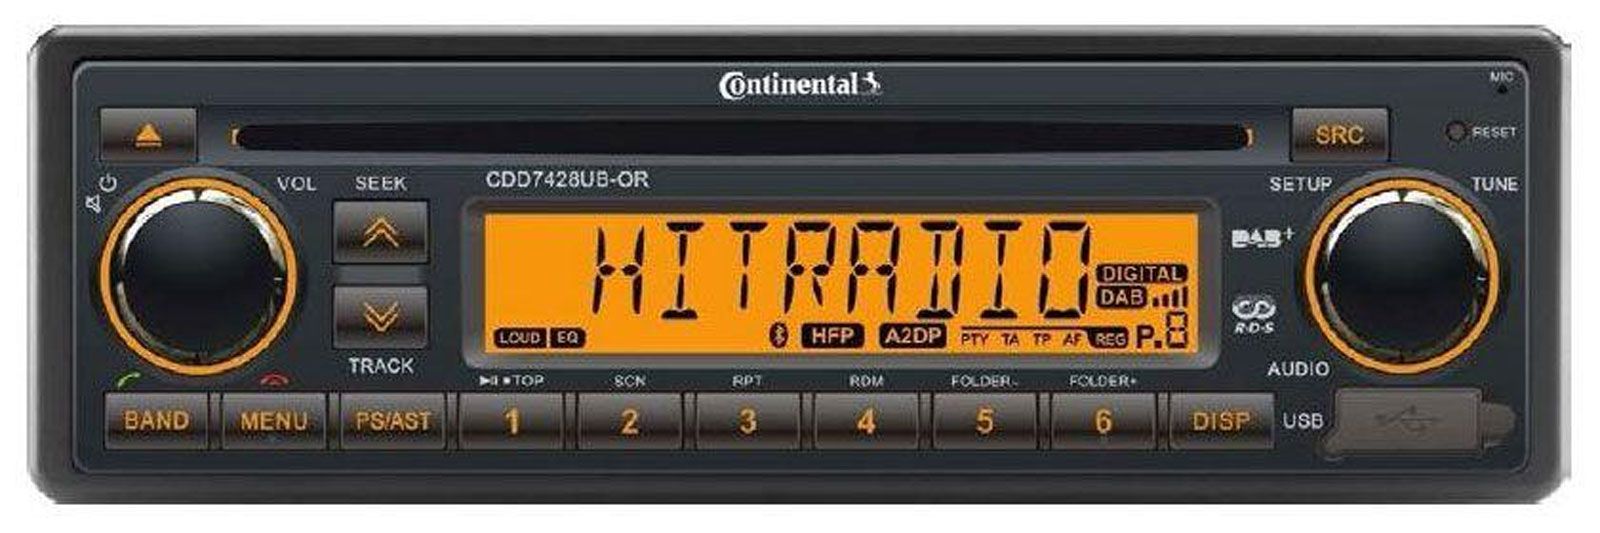 Continental CDD7428UB-OR 24 Volt - CD/MP3-Autoradio mit Bluetooth / DAB / USB / AUX-IN